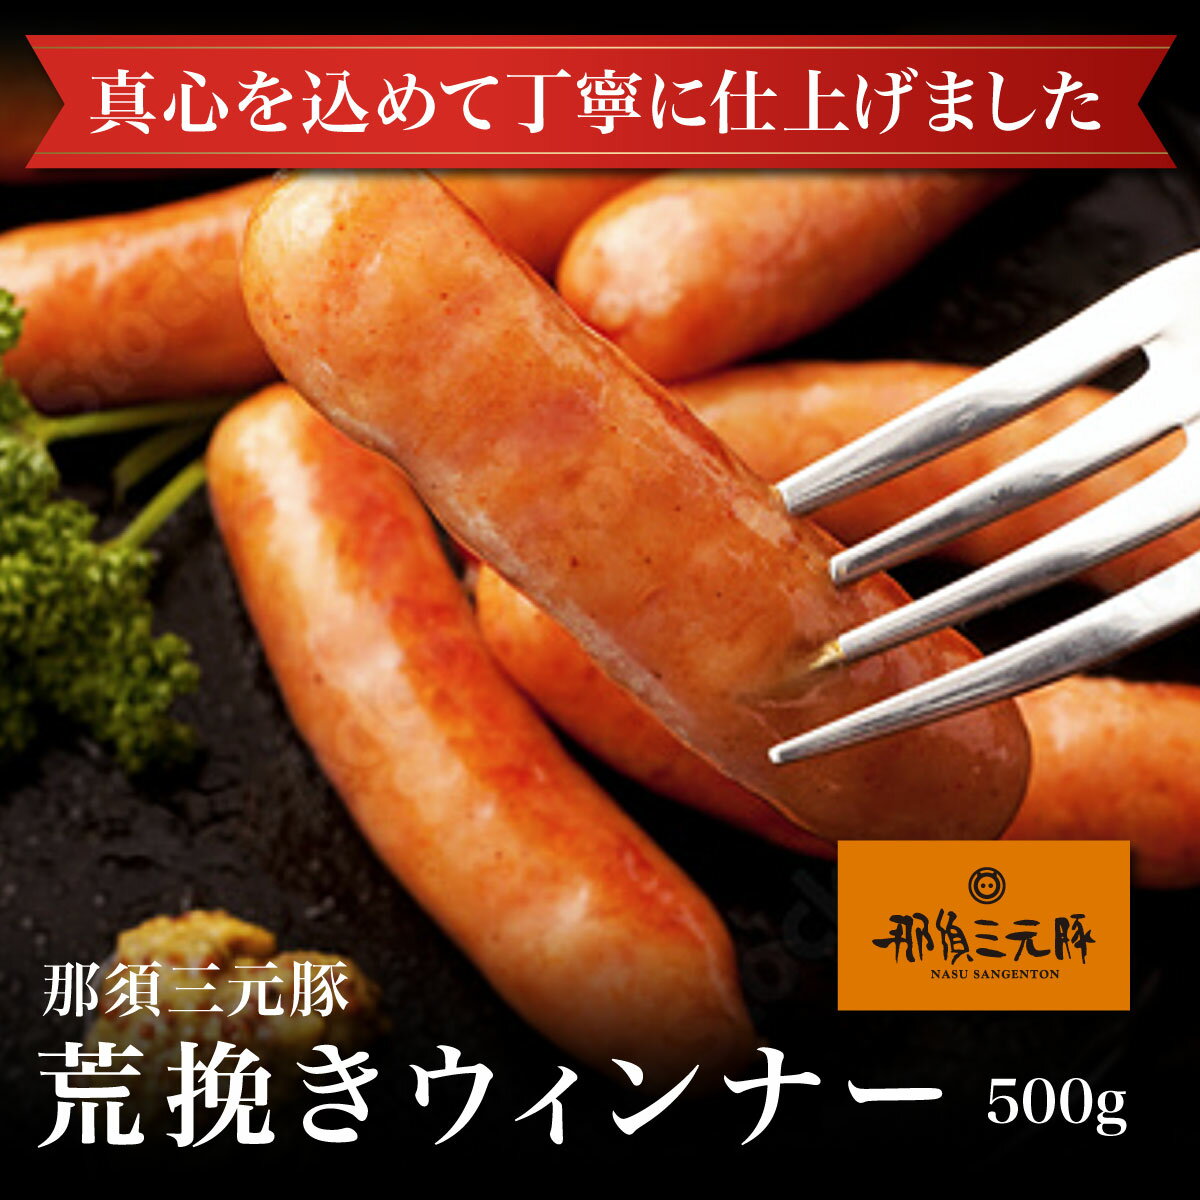 【冷凍】栃木県産 那須三元豚のあらびきウインナー ソーセージ